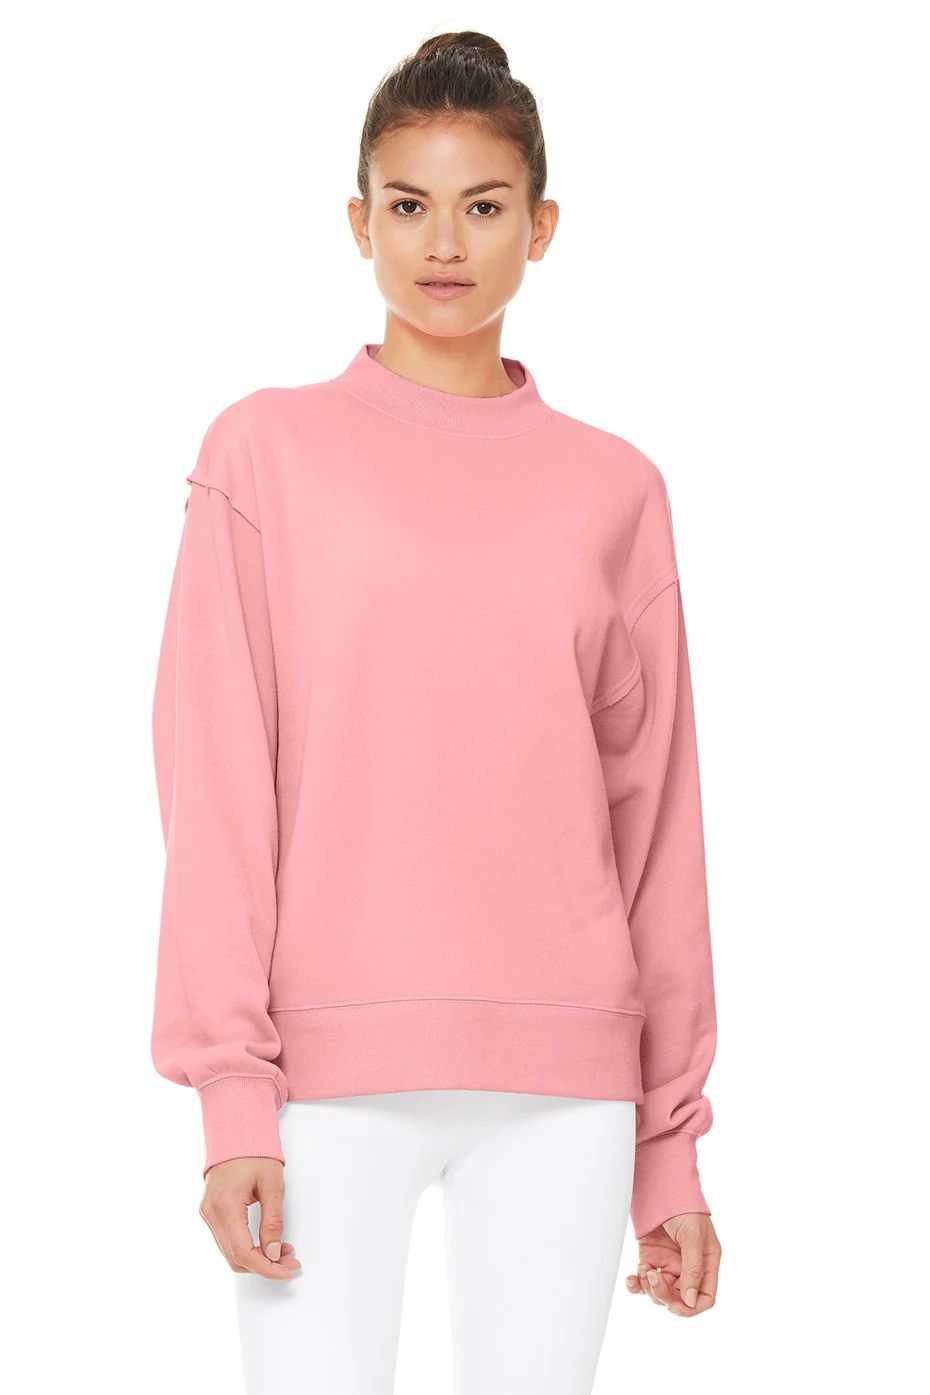 Alo YogaÂ® | Freestyle Sweatshirt in Macaron Pink, Size: XS | Alo Yoga